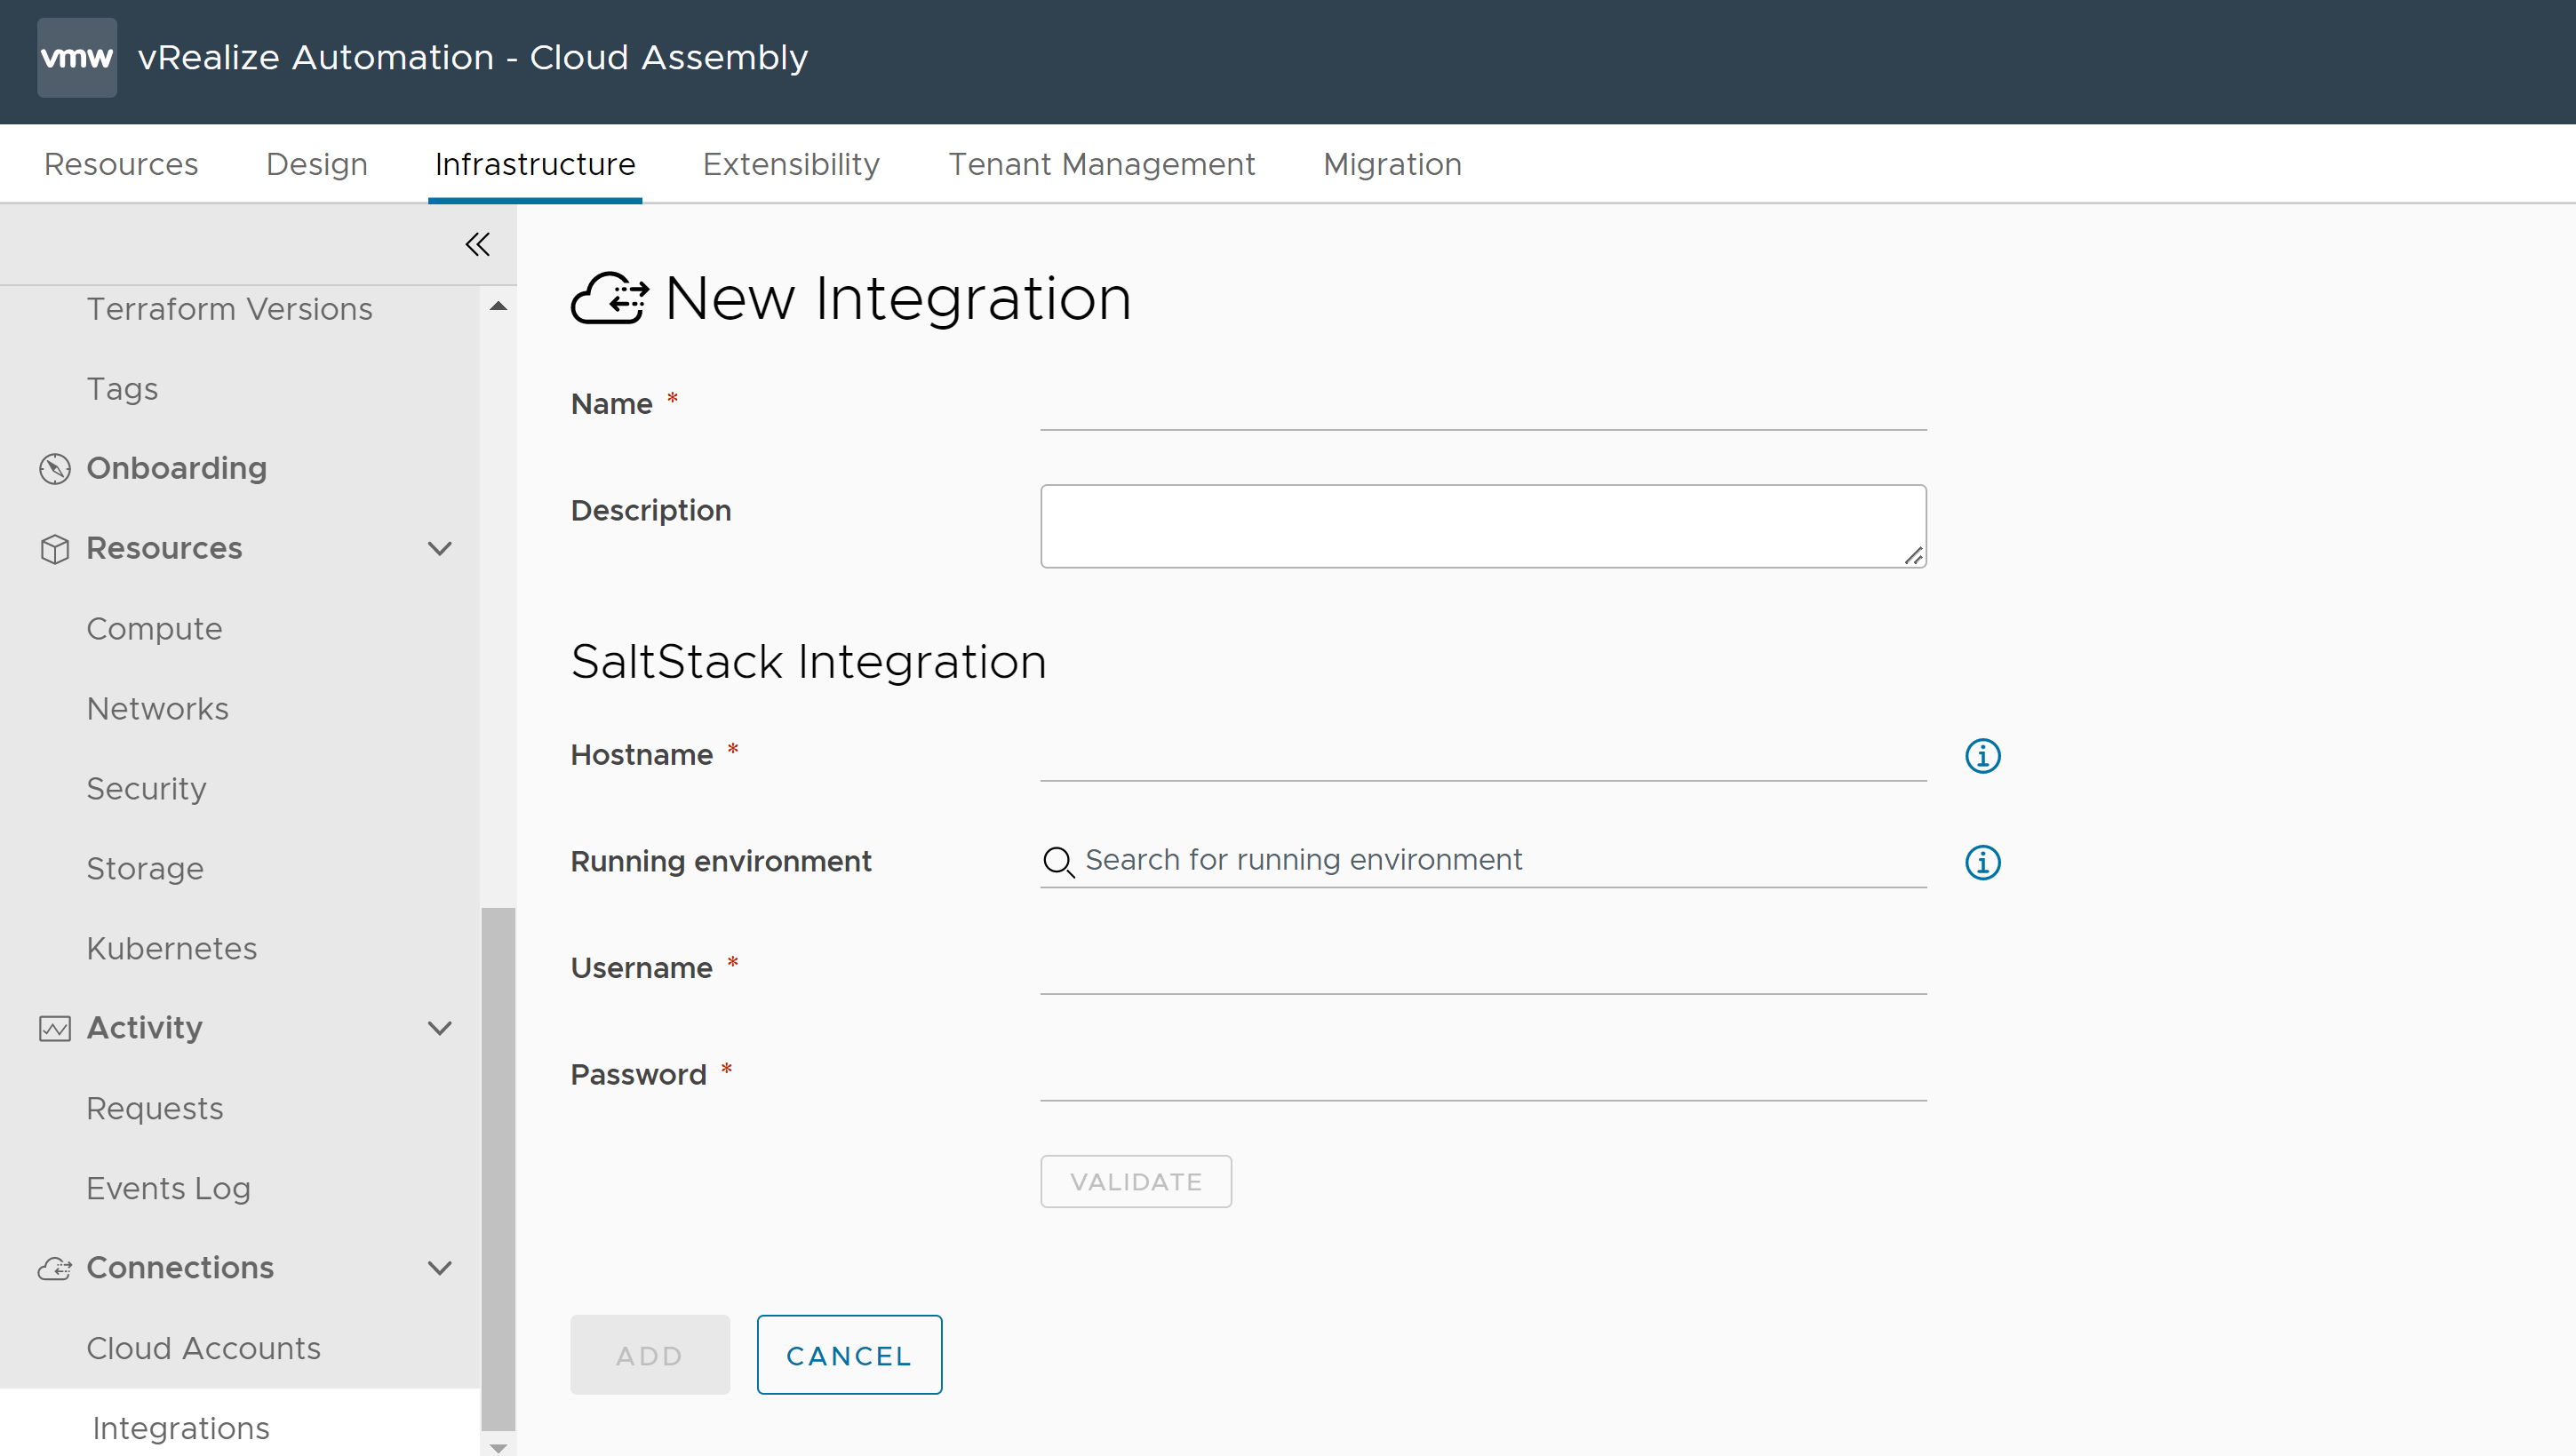 Formular zum Erstellen einer neuen Integration in Cloud Assembly